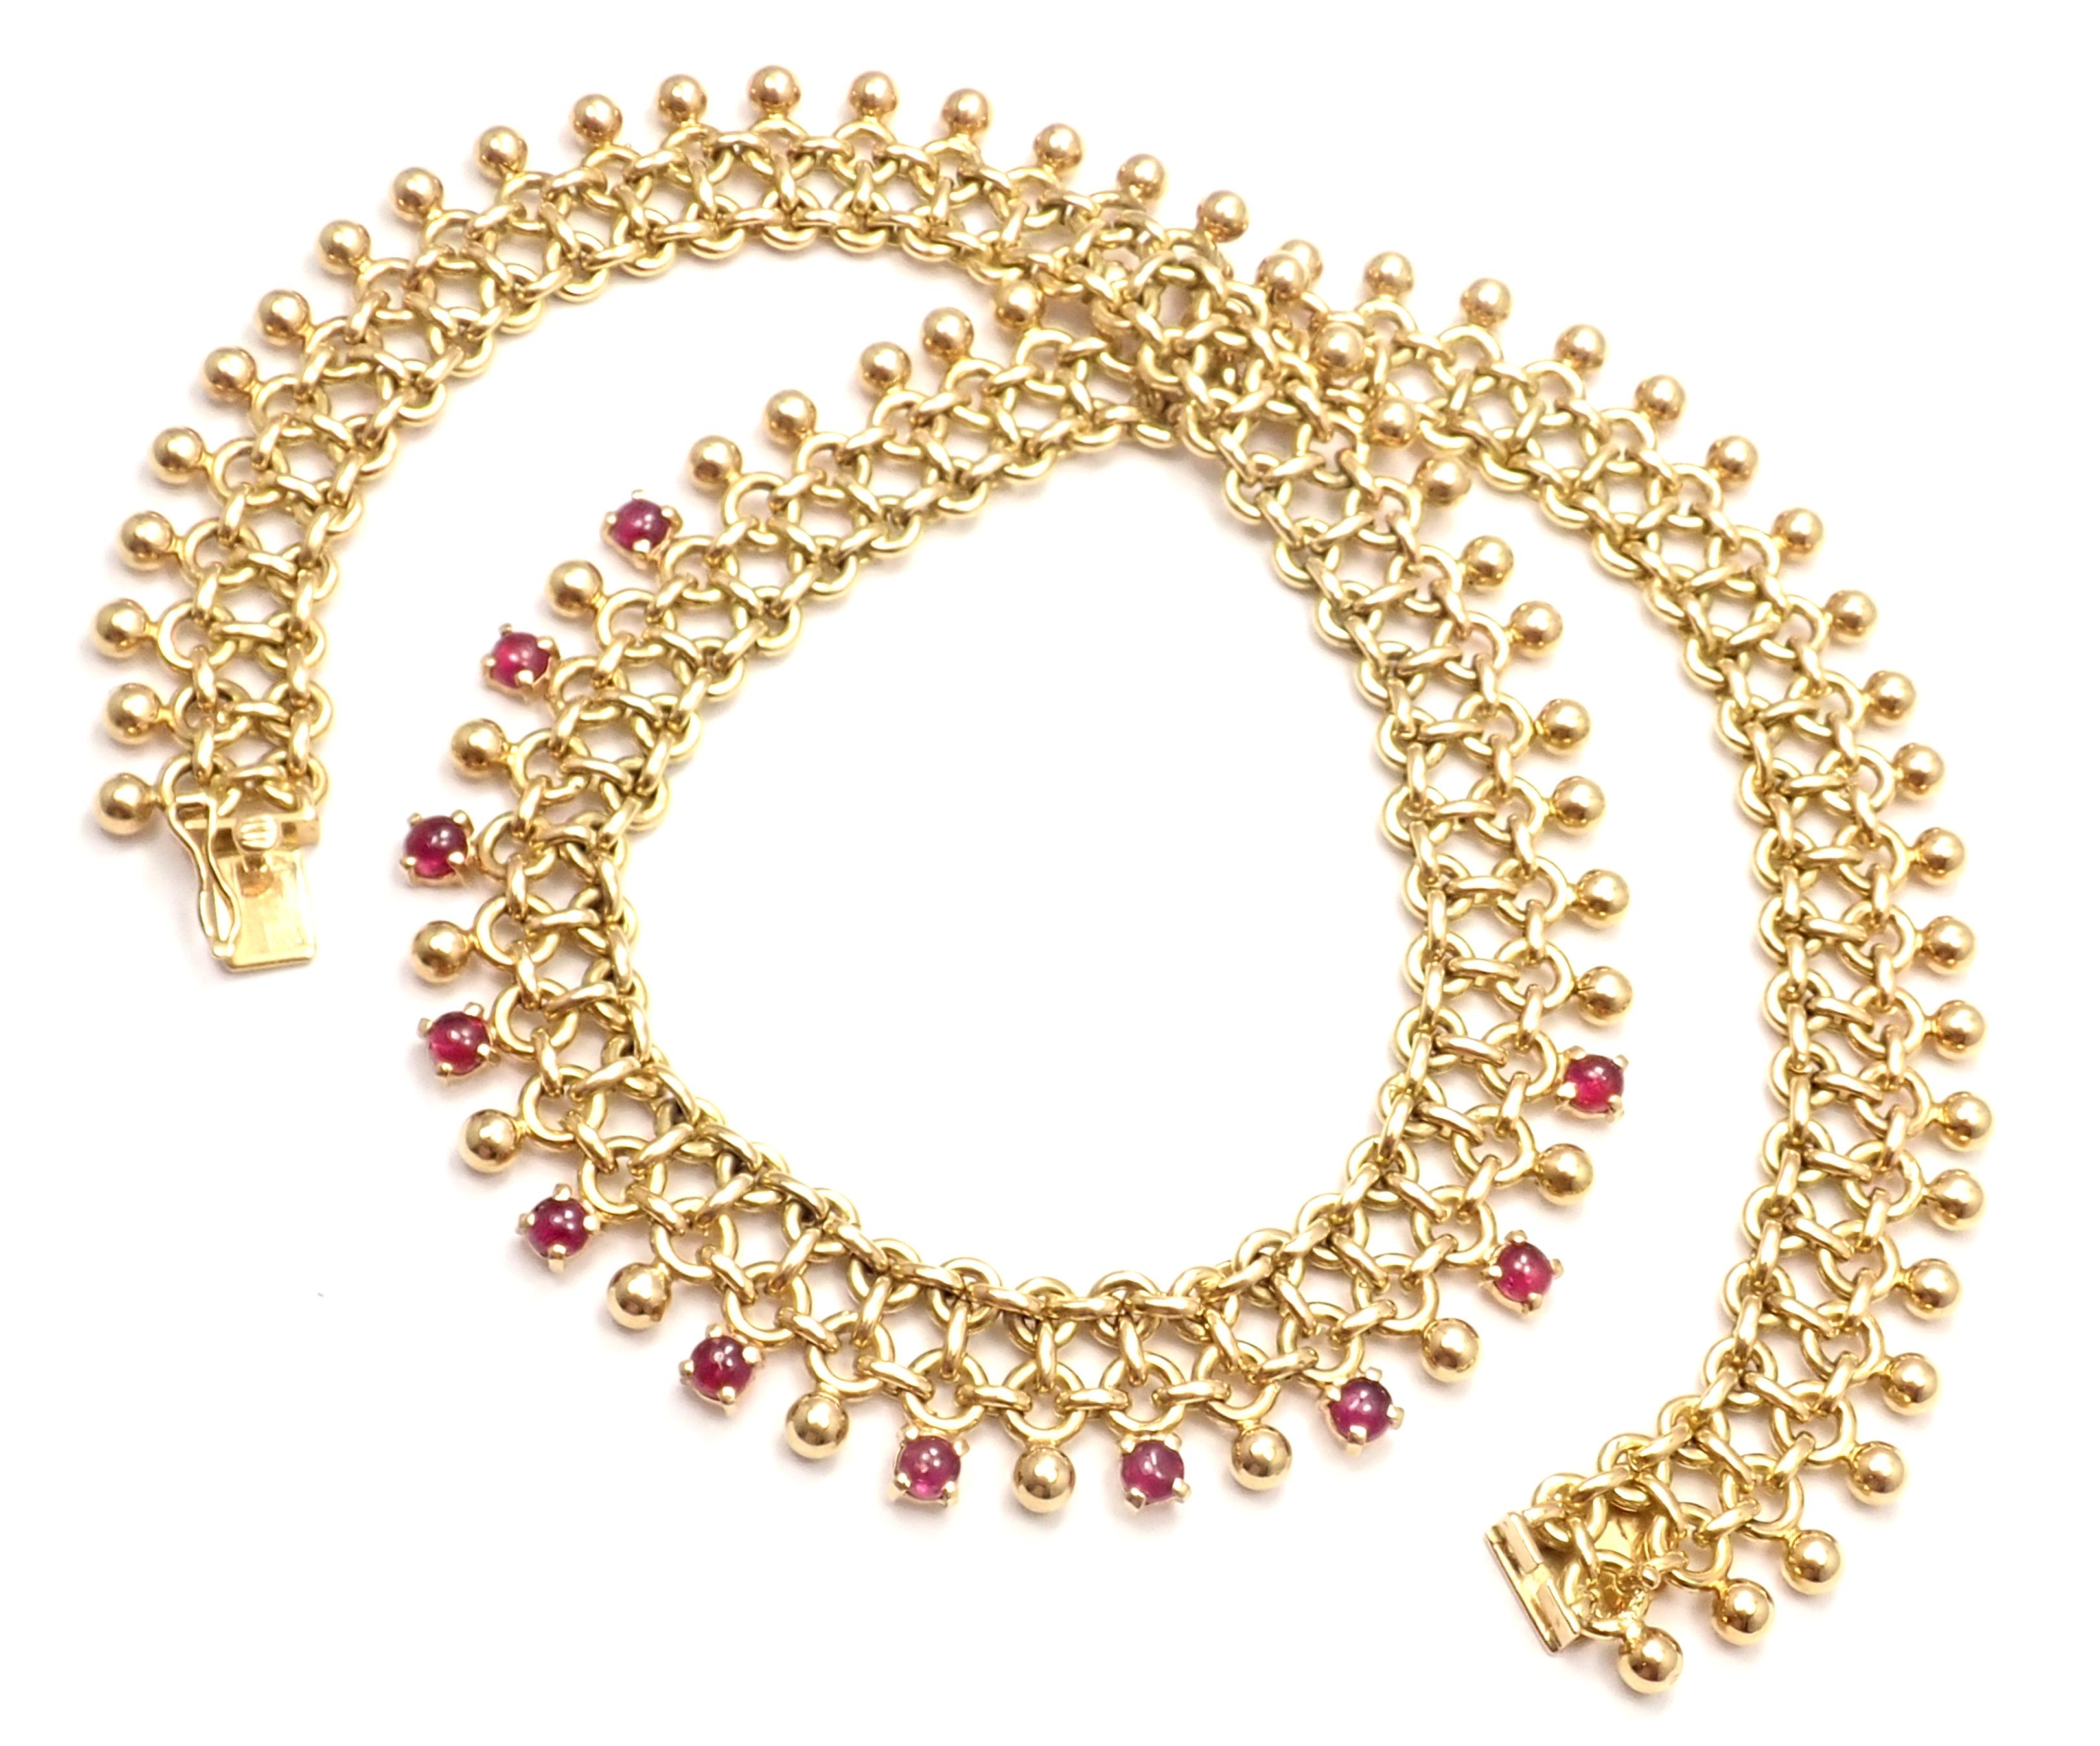 18k Gelbgold Vintage Rubin Halsband Halskette von Tiffany Co.
Mit 11 runden Rubinen Gesamtgewicht ca. 5ct
Einzelheiten: 
Länge: 16